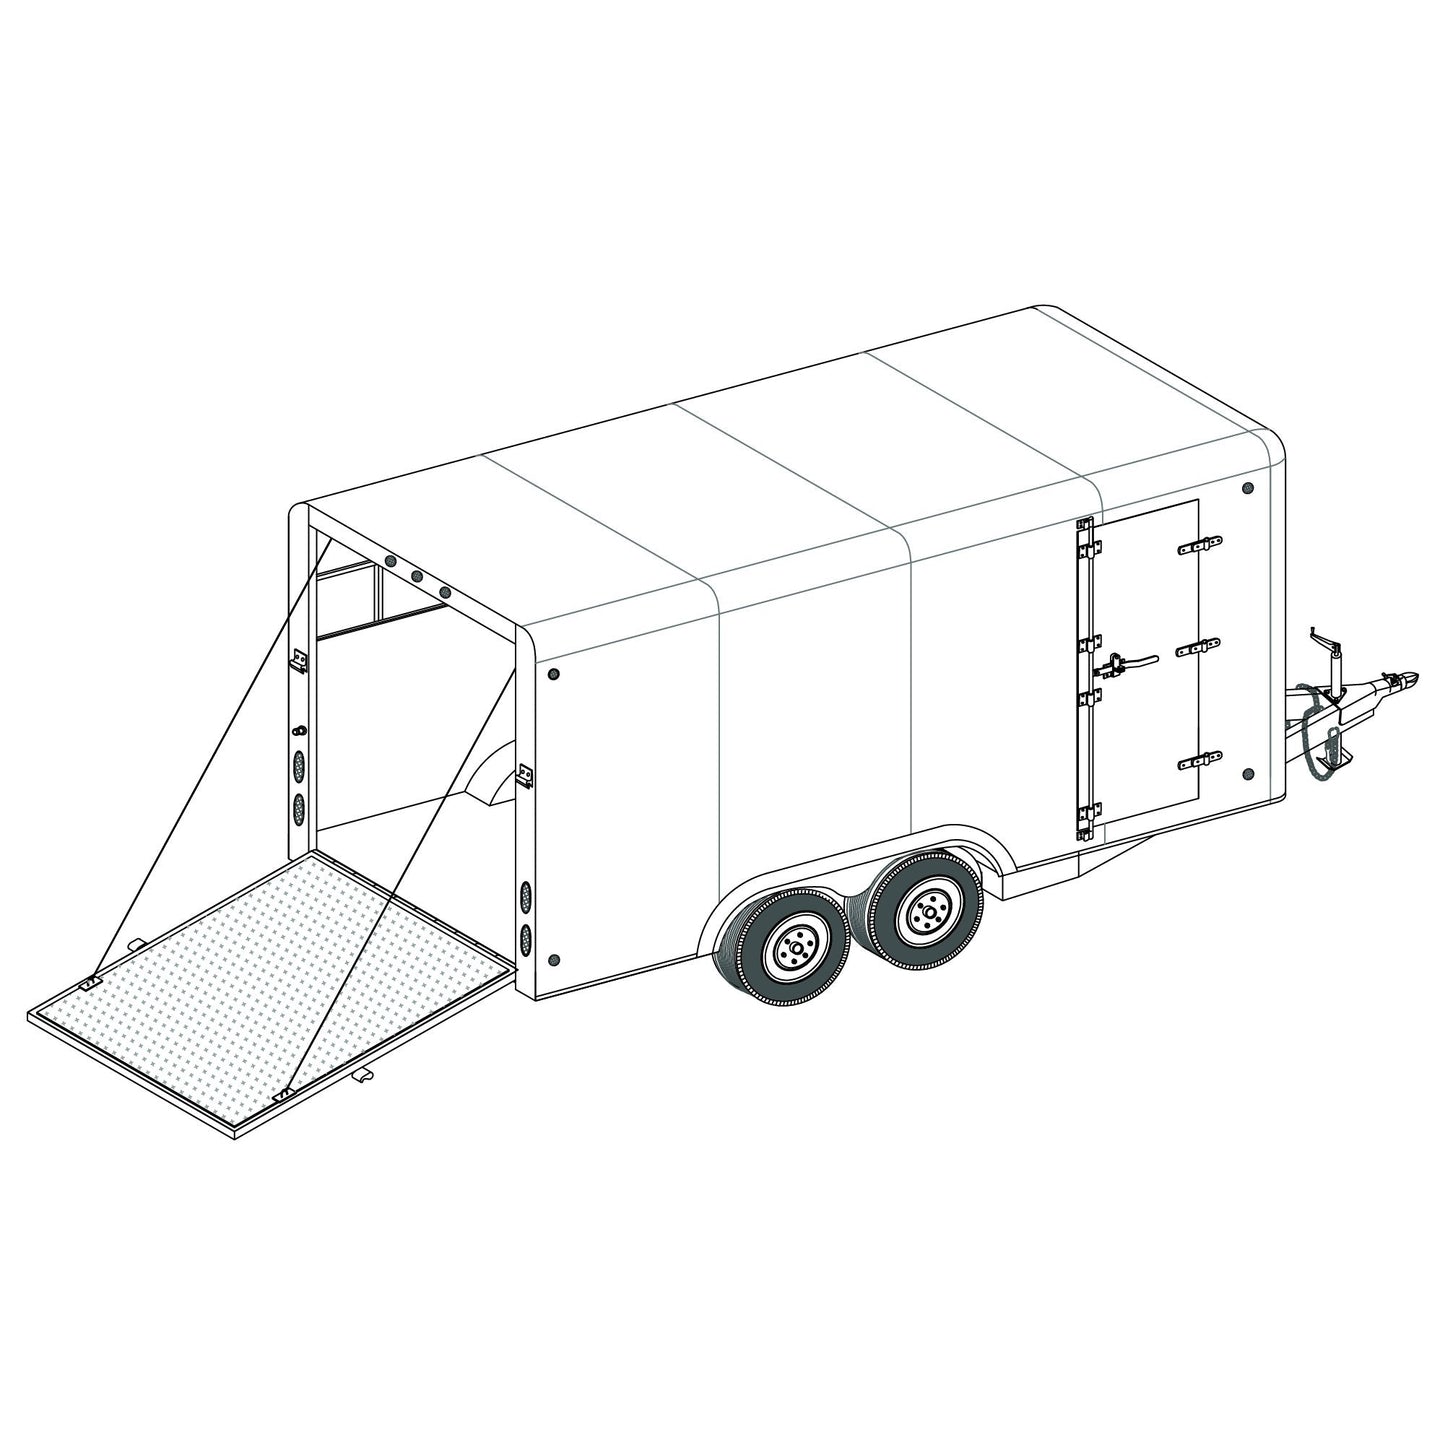 DIY Trailer Plan - 16CC - Covered Cargo Trailer